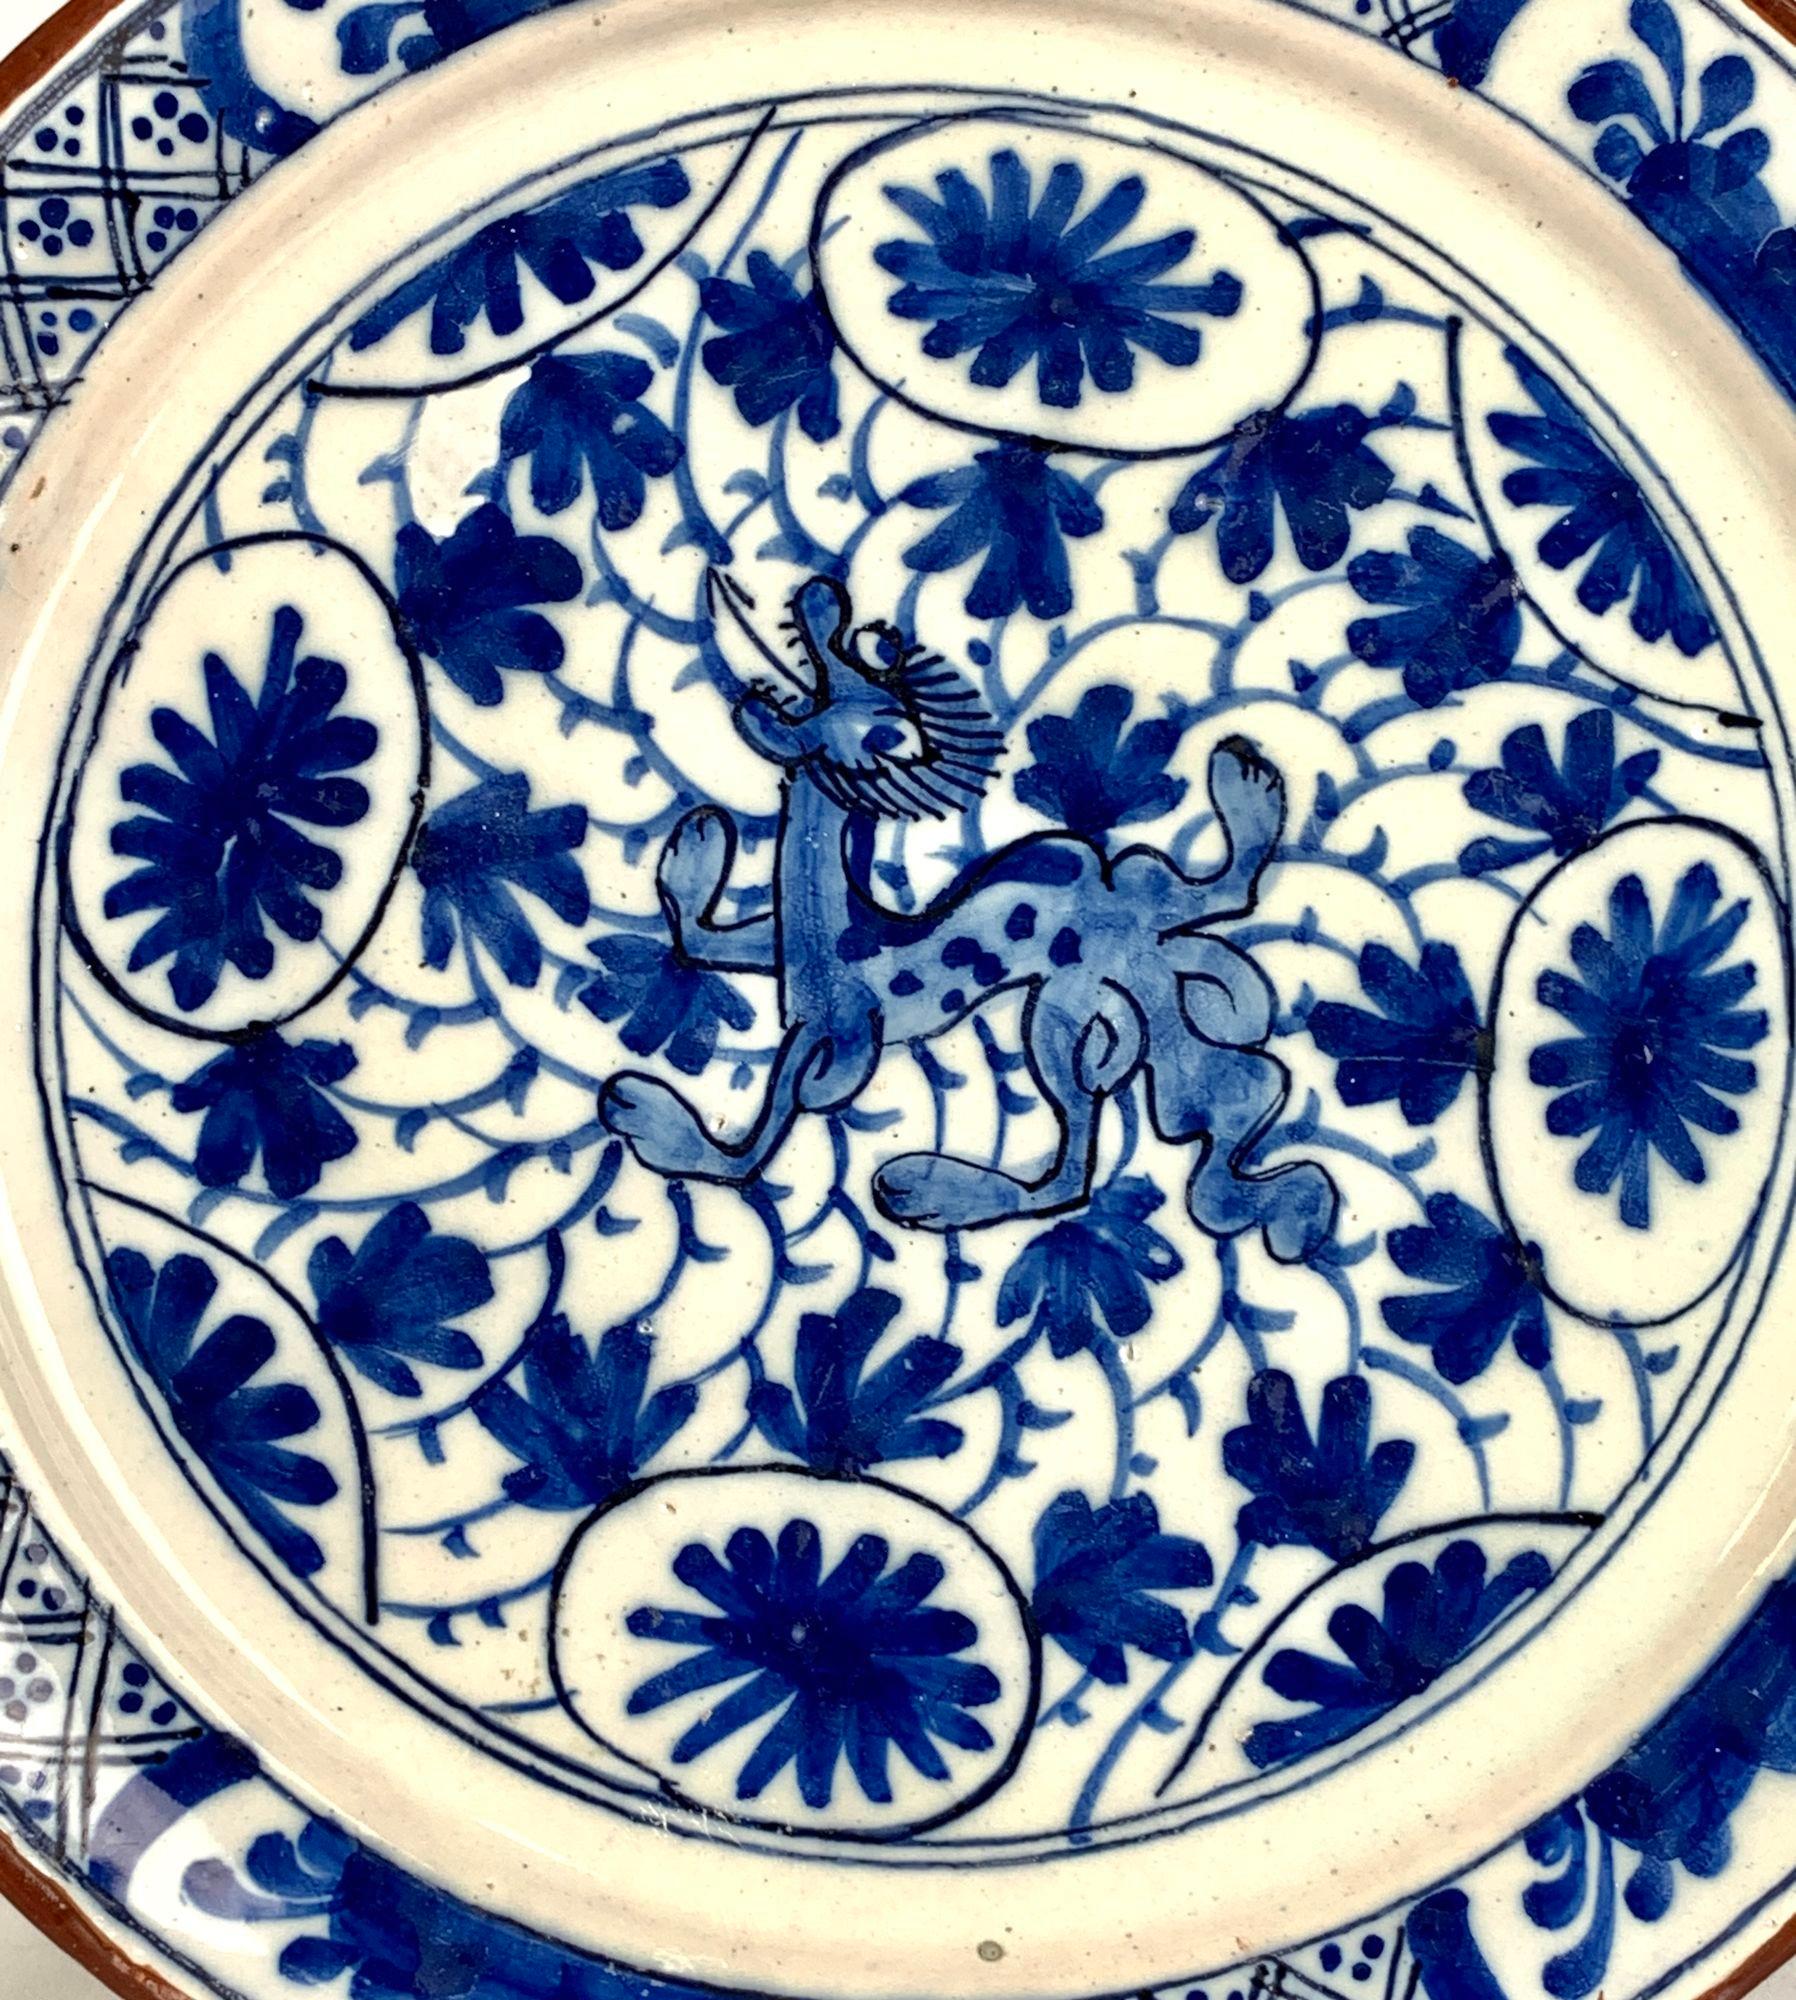 Ce plat exquis est presque identique à un plat bleu et blanc de Delft dans la collection du Philadelphia Museum of Art Bequest de John W. Pepper. 1935-10-39.
Le plat est décrit en détail par E B Scapp dans son livre 